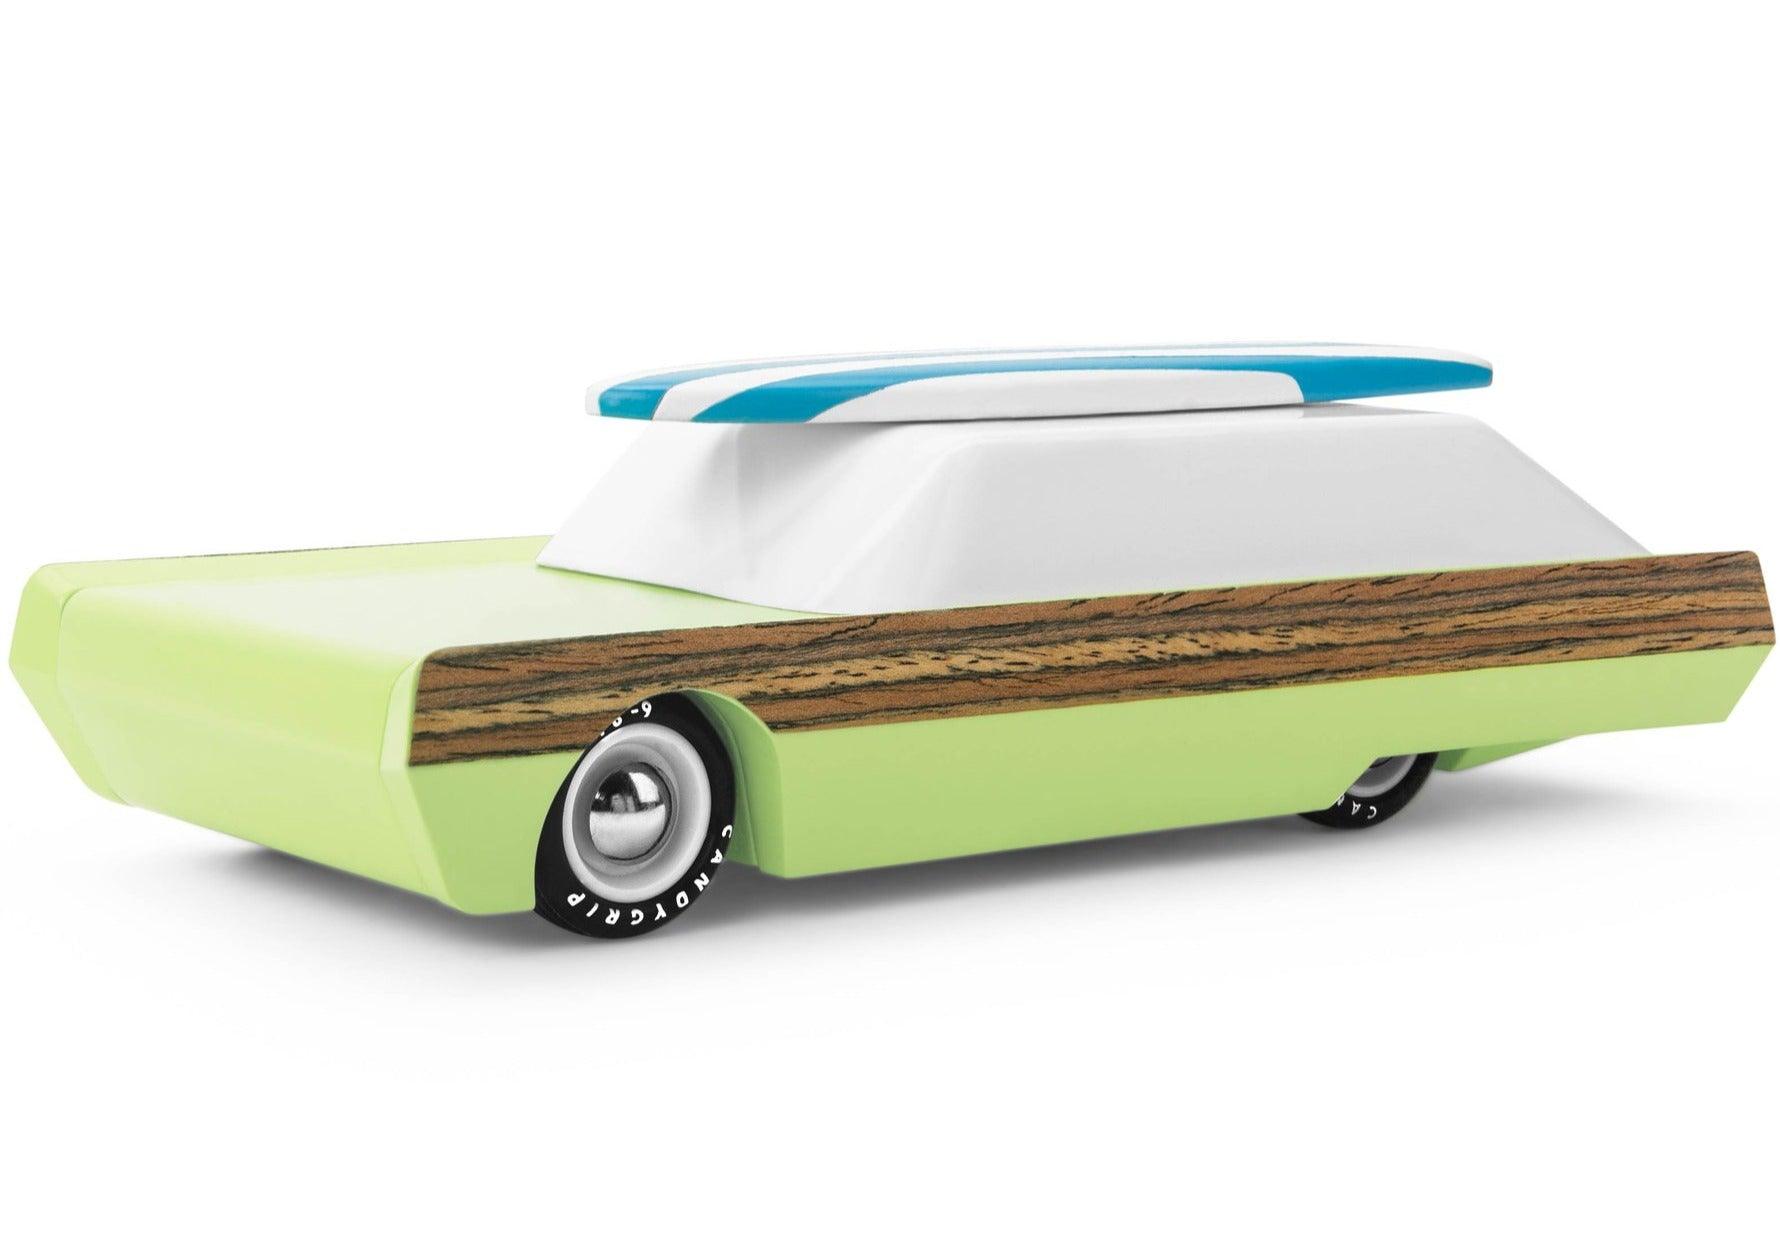 Hračky Candylab: Drevené auto surfínu griffin